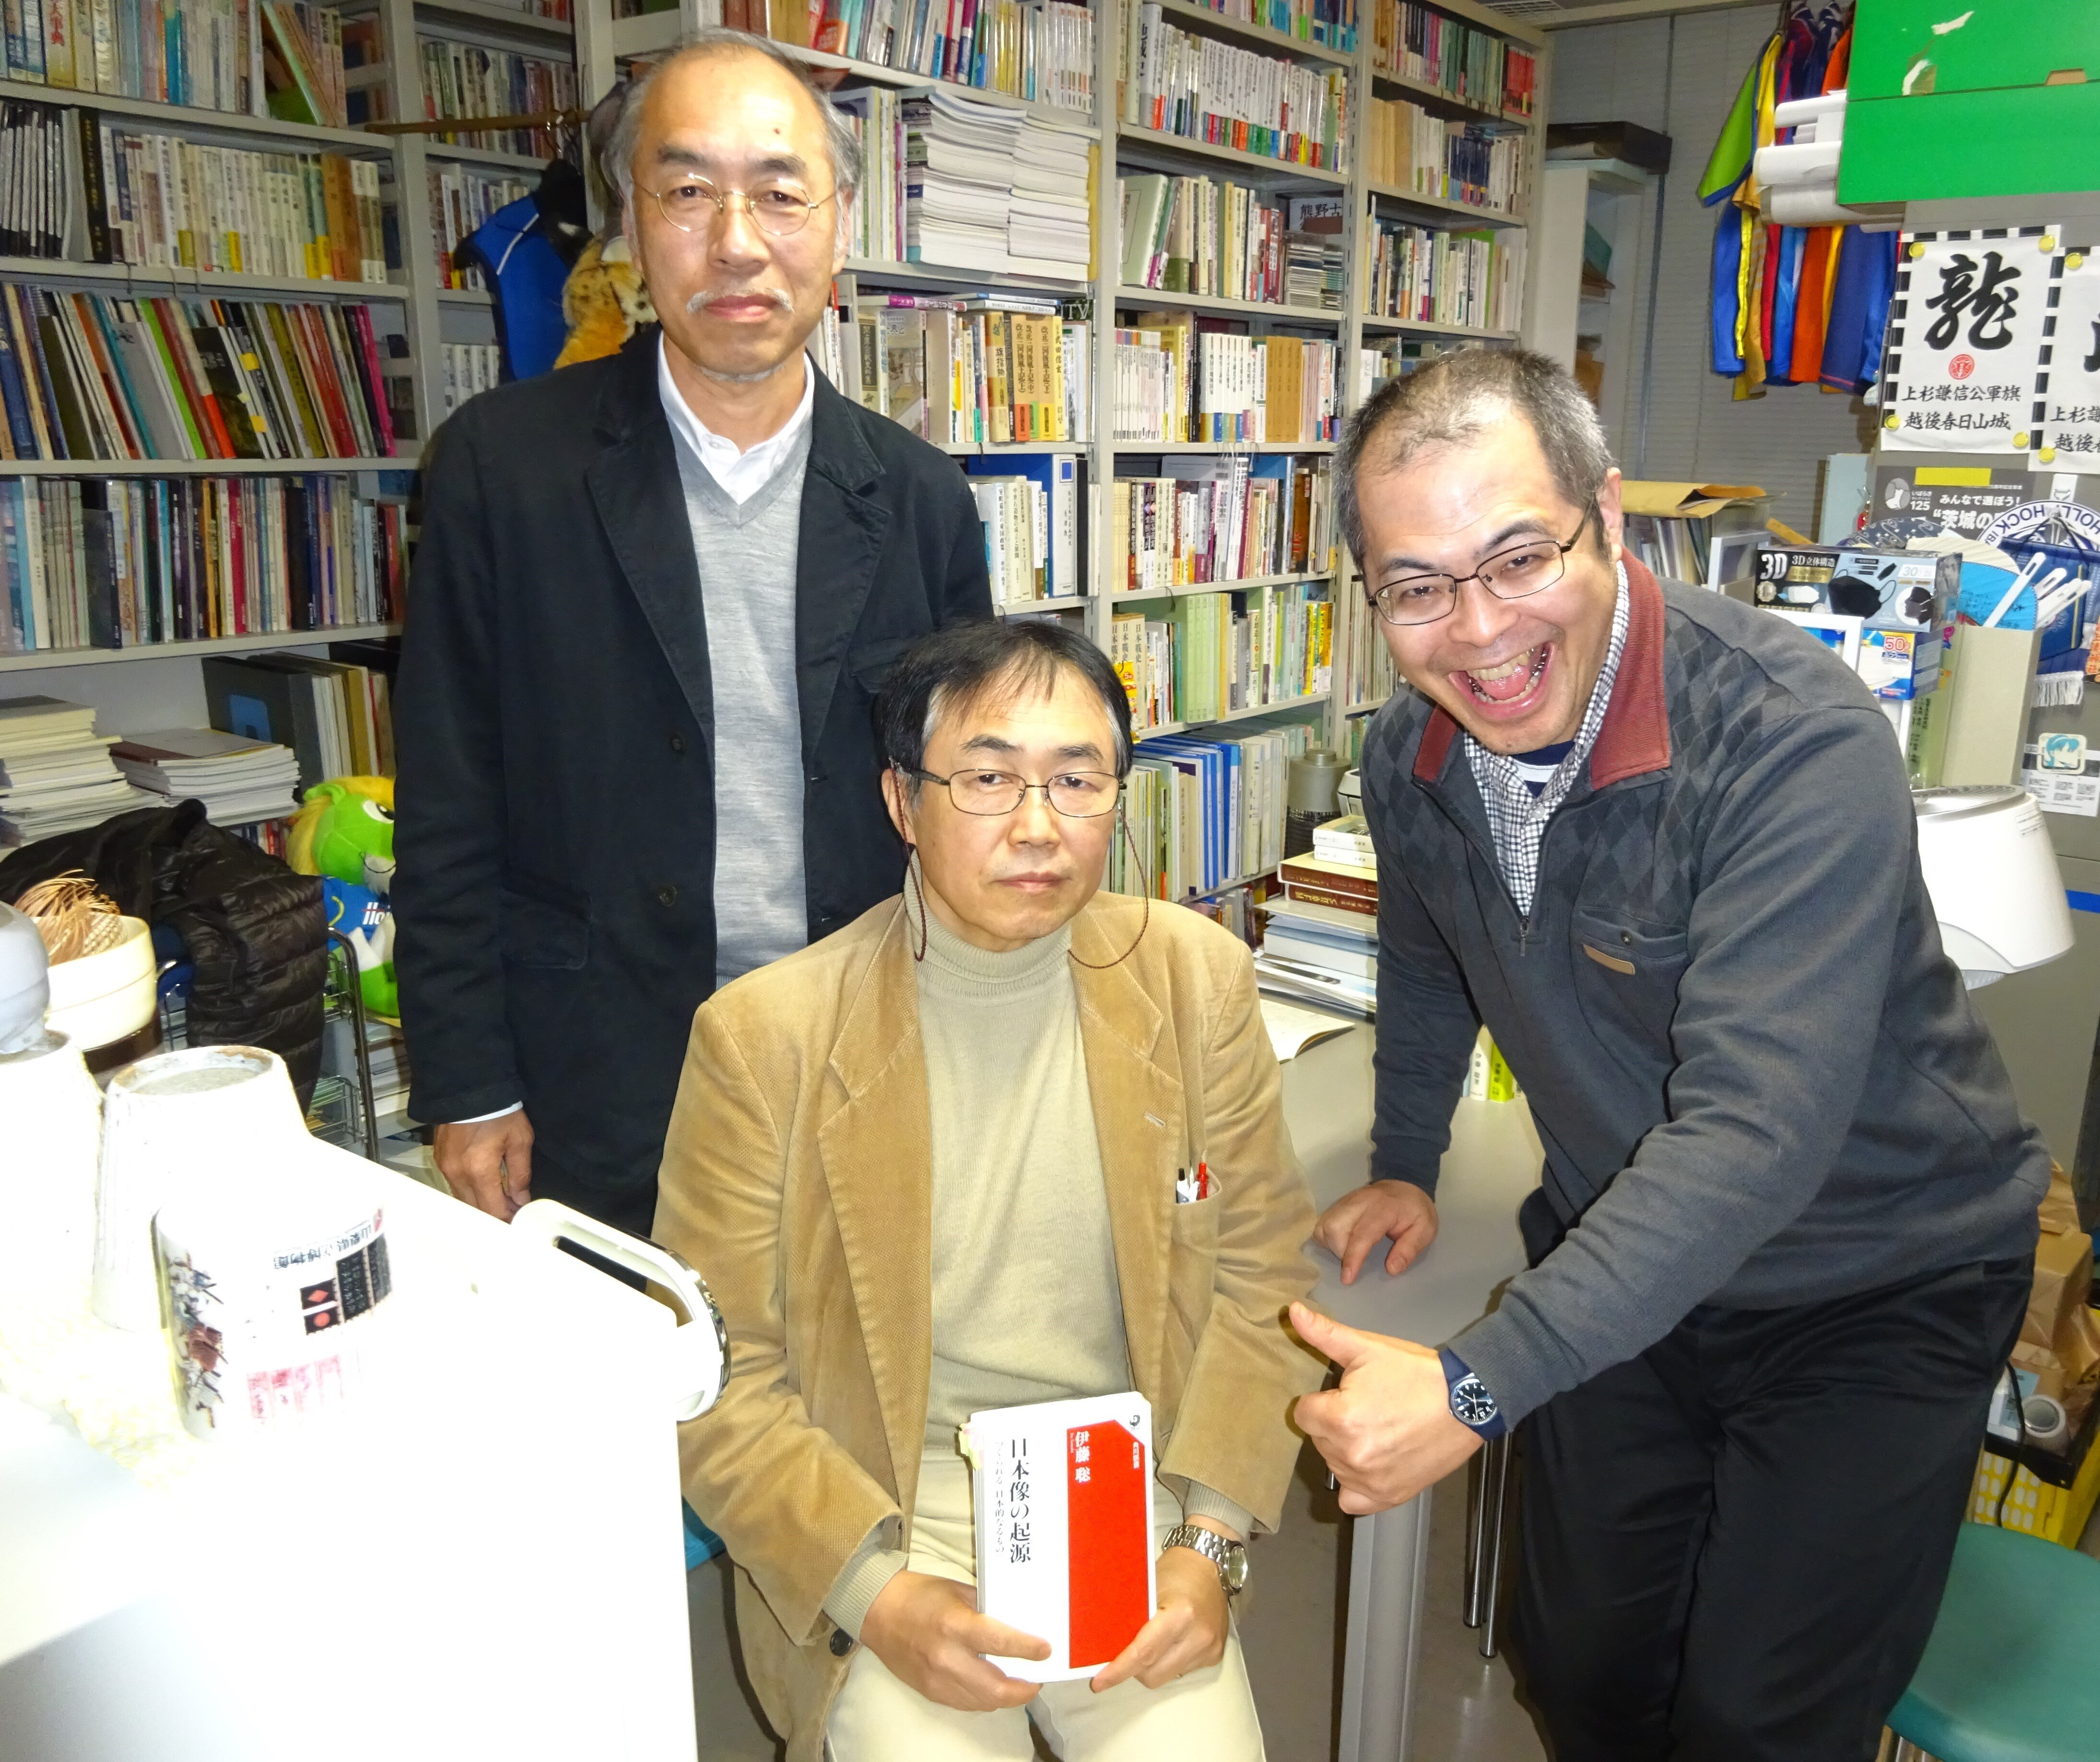 伊藤聡教授が新著『日本像の起源―つくられる〈日本的なるもの〉』を語る<br>【人文社会科学の書棚から】